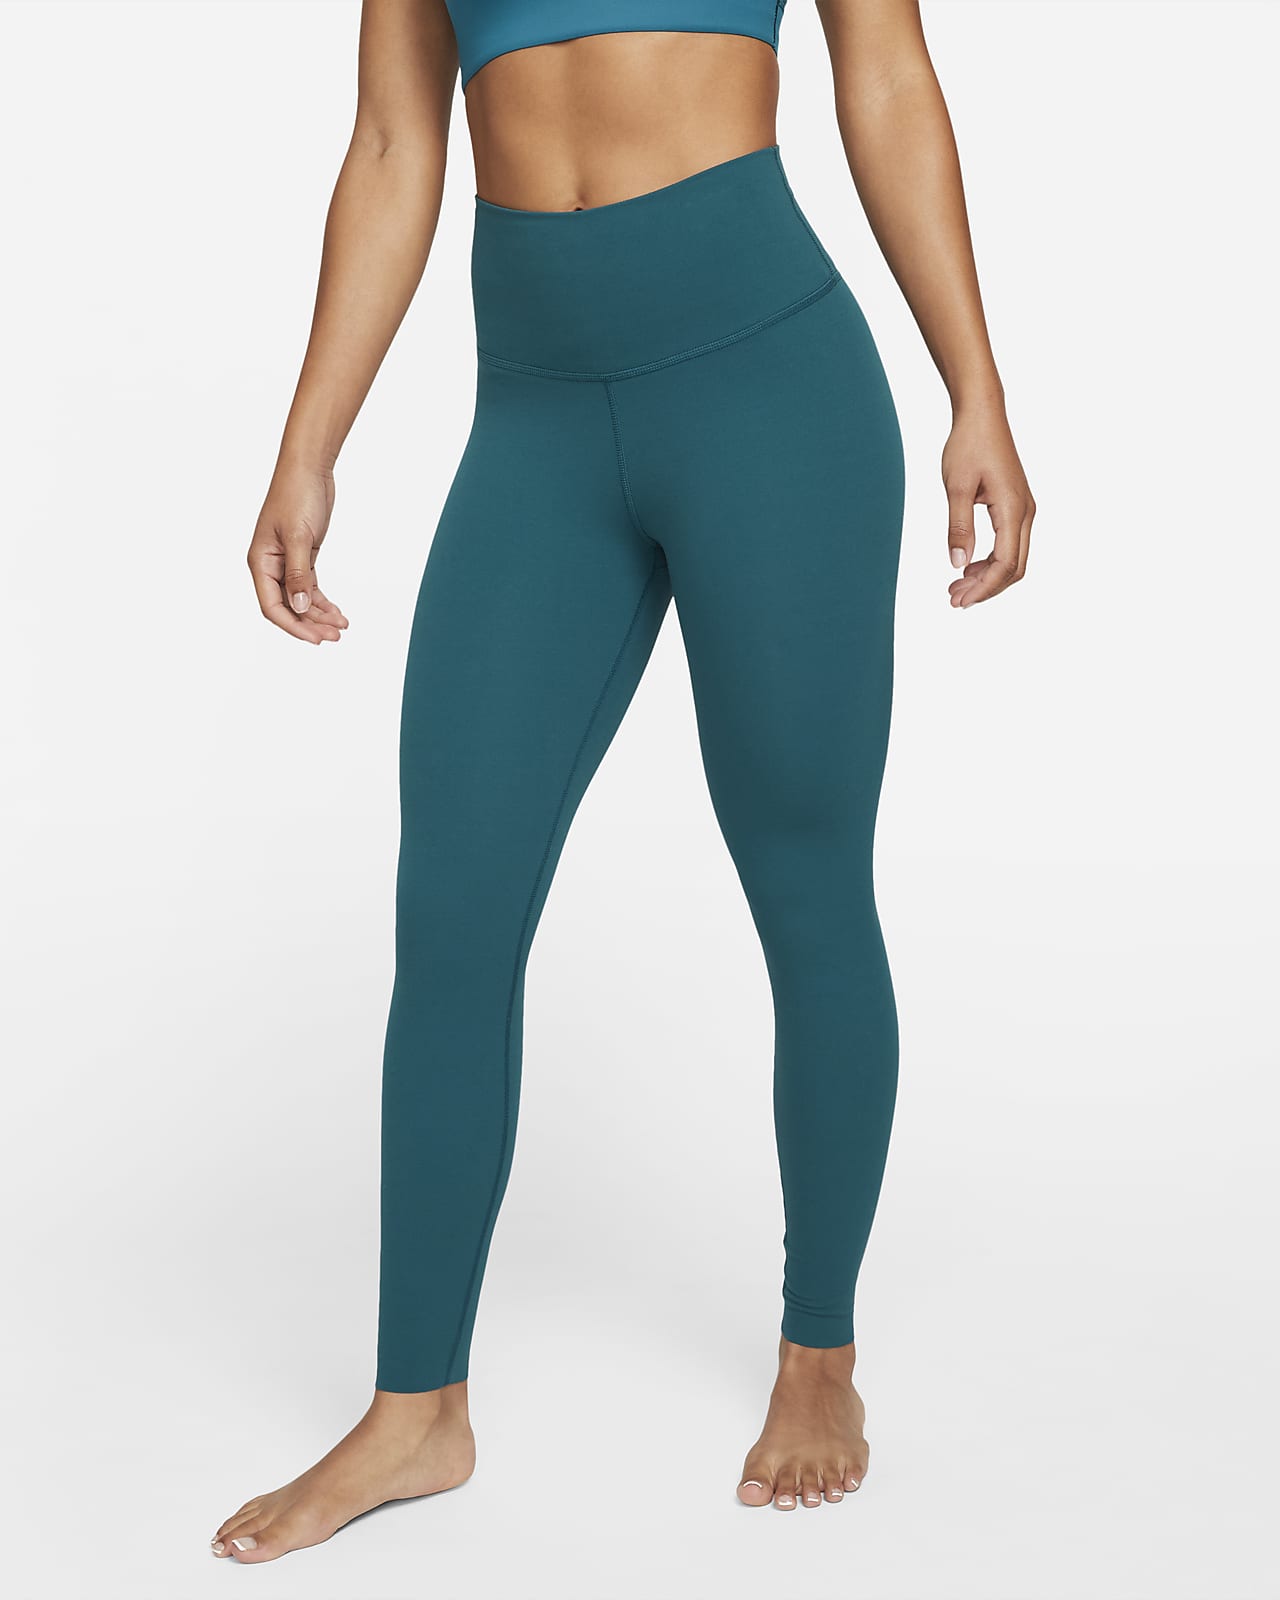 Legging taille haute 7/8 Infinalon Nike Yoga Dri-FIT Luxe pour Femme